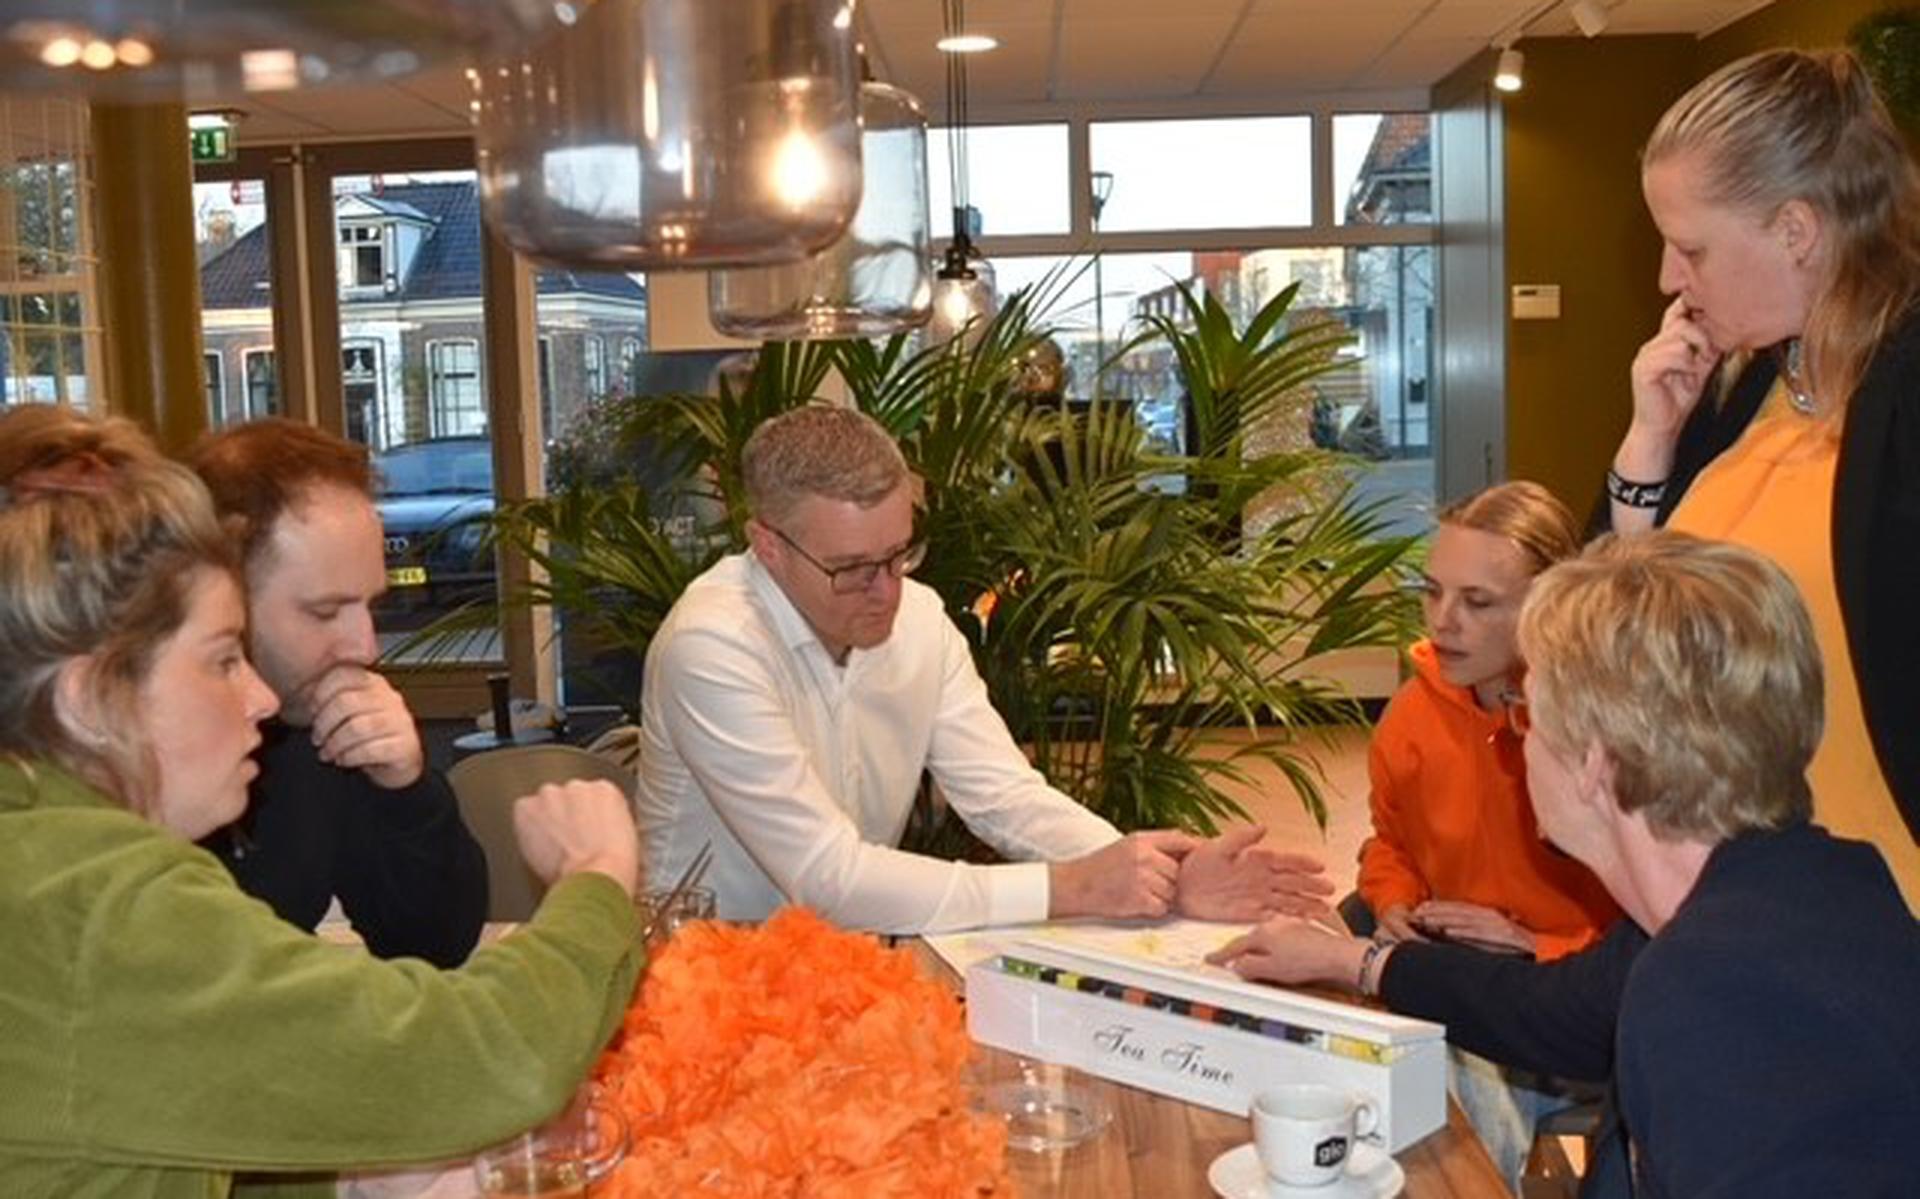 Op de foto: Het nieuwe bestuur zet in de laatste vergadering de puntjes op de i voor de Oranjemarkt van Zuidhorn van dit jaar met (vlnr) de bestuursleden Laurien Zeeland, Jasper Stel, Roland Turksema, Angela Wagenaar-Van der Laan, Anouschka Van Helden-Maasbommel en Jettie Oostenbrug.